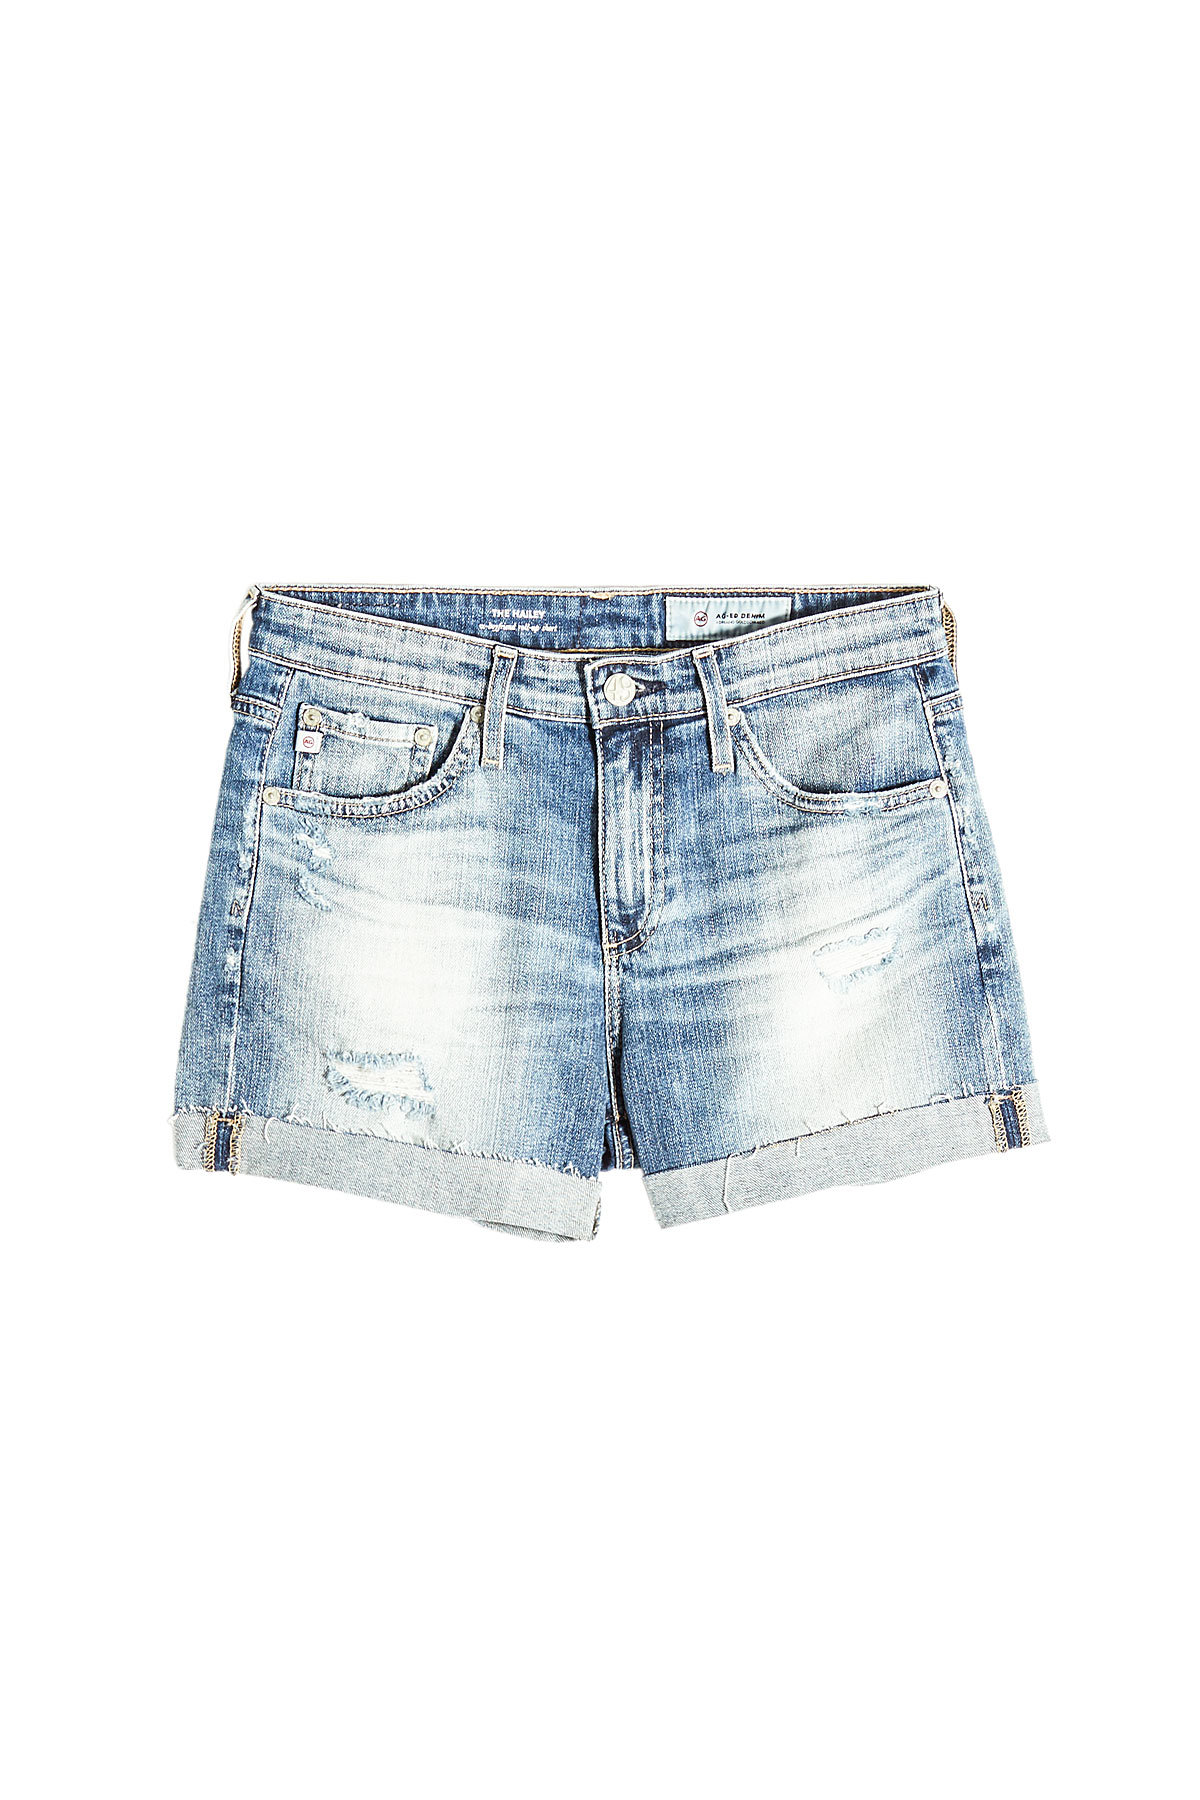 AG Jeans - Hailey Denim Shorts